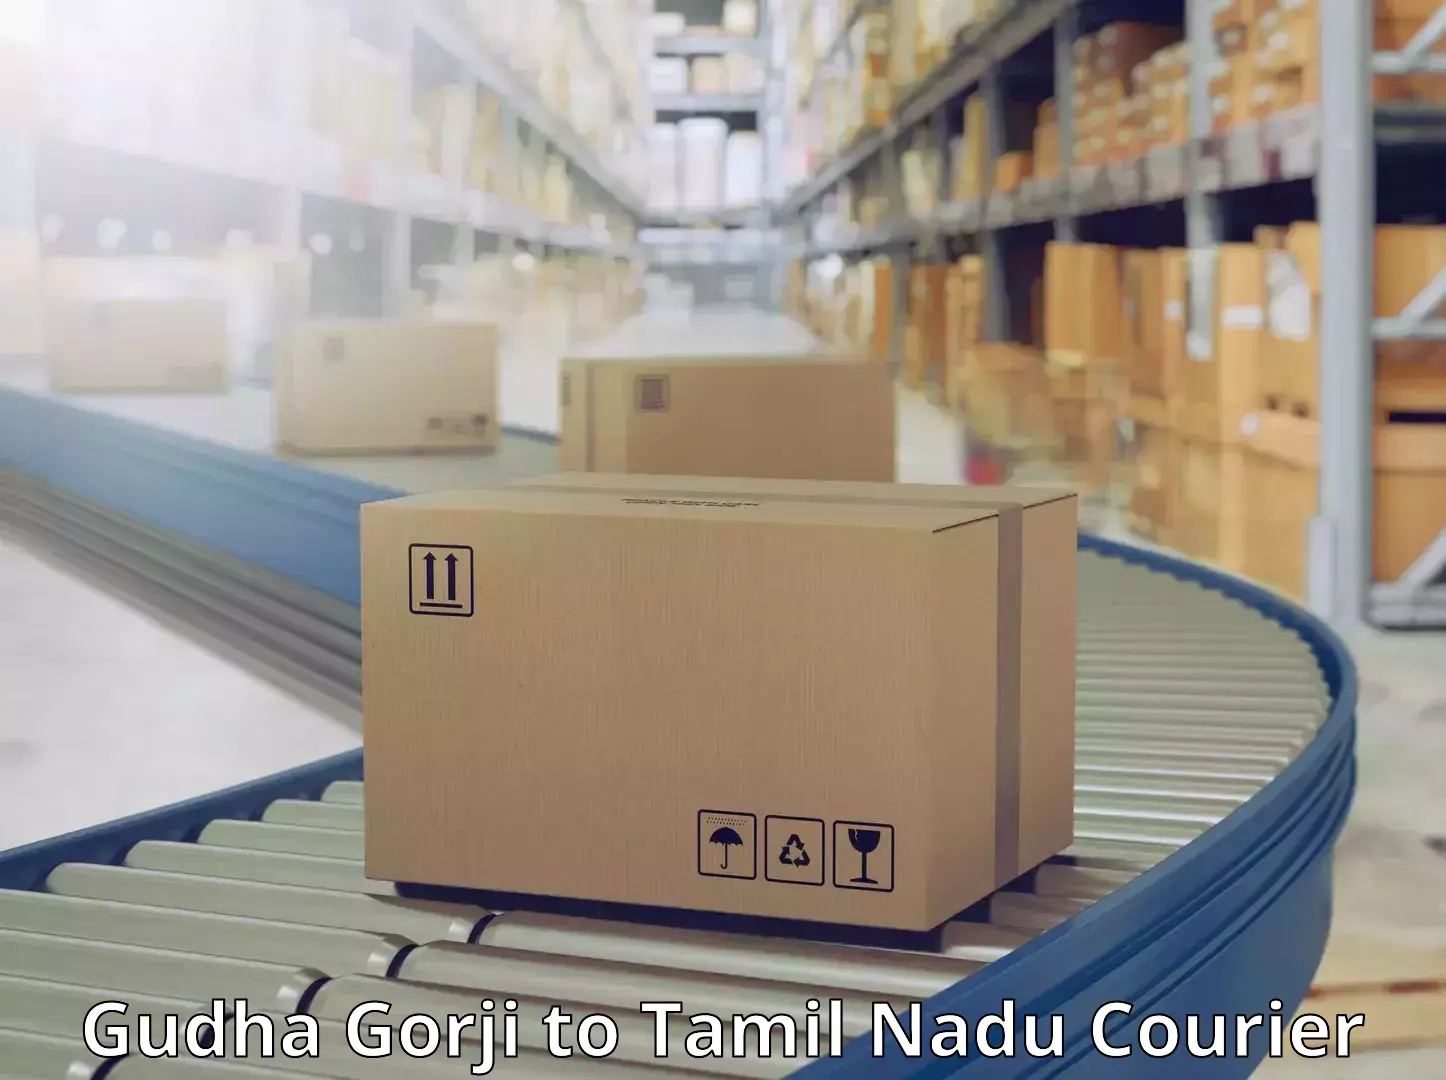 Innovative courier solutions Gudha Gorji to Tamil Nadu